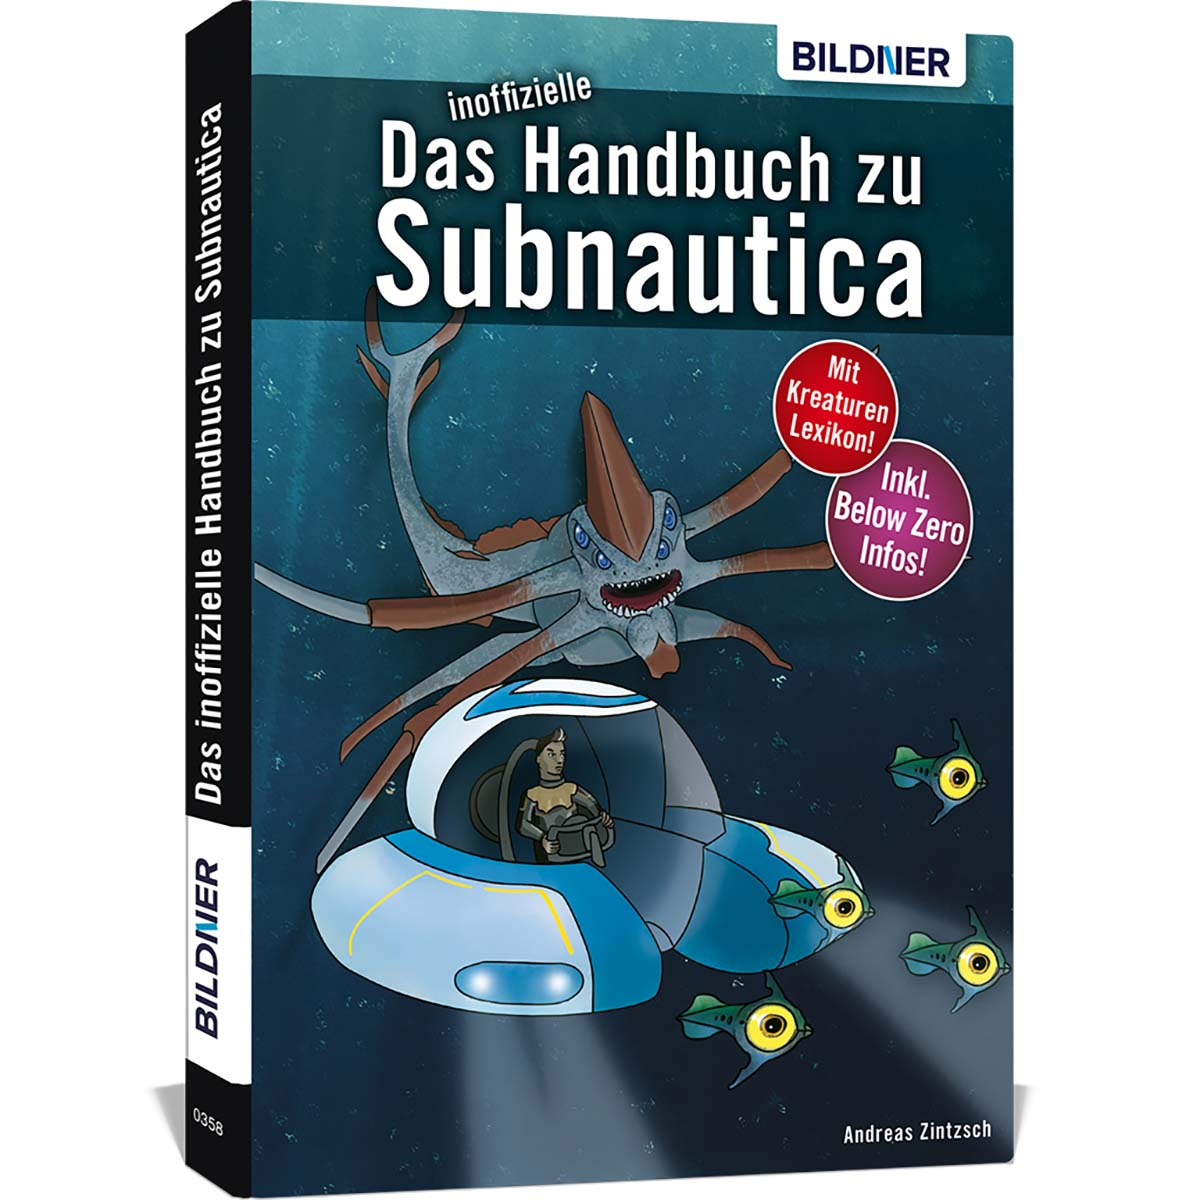 Das inoffizielle Handbuch zu Subnautica